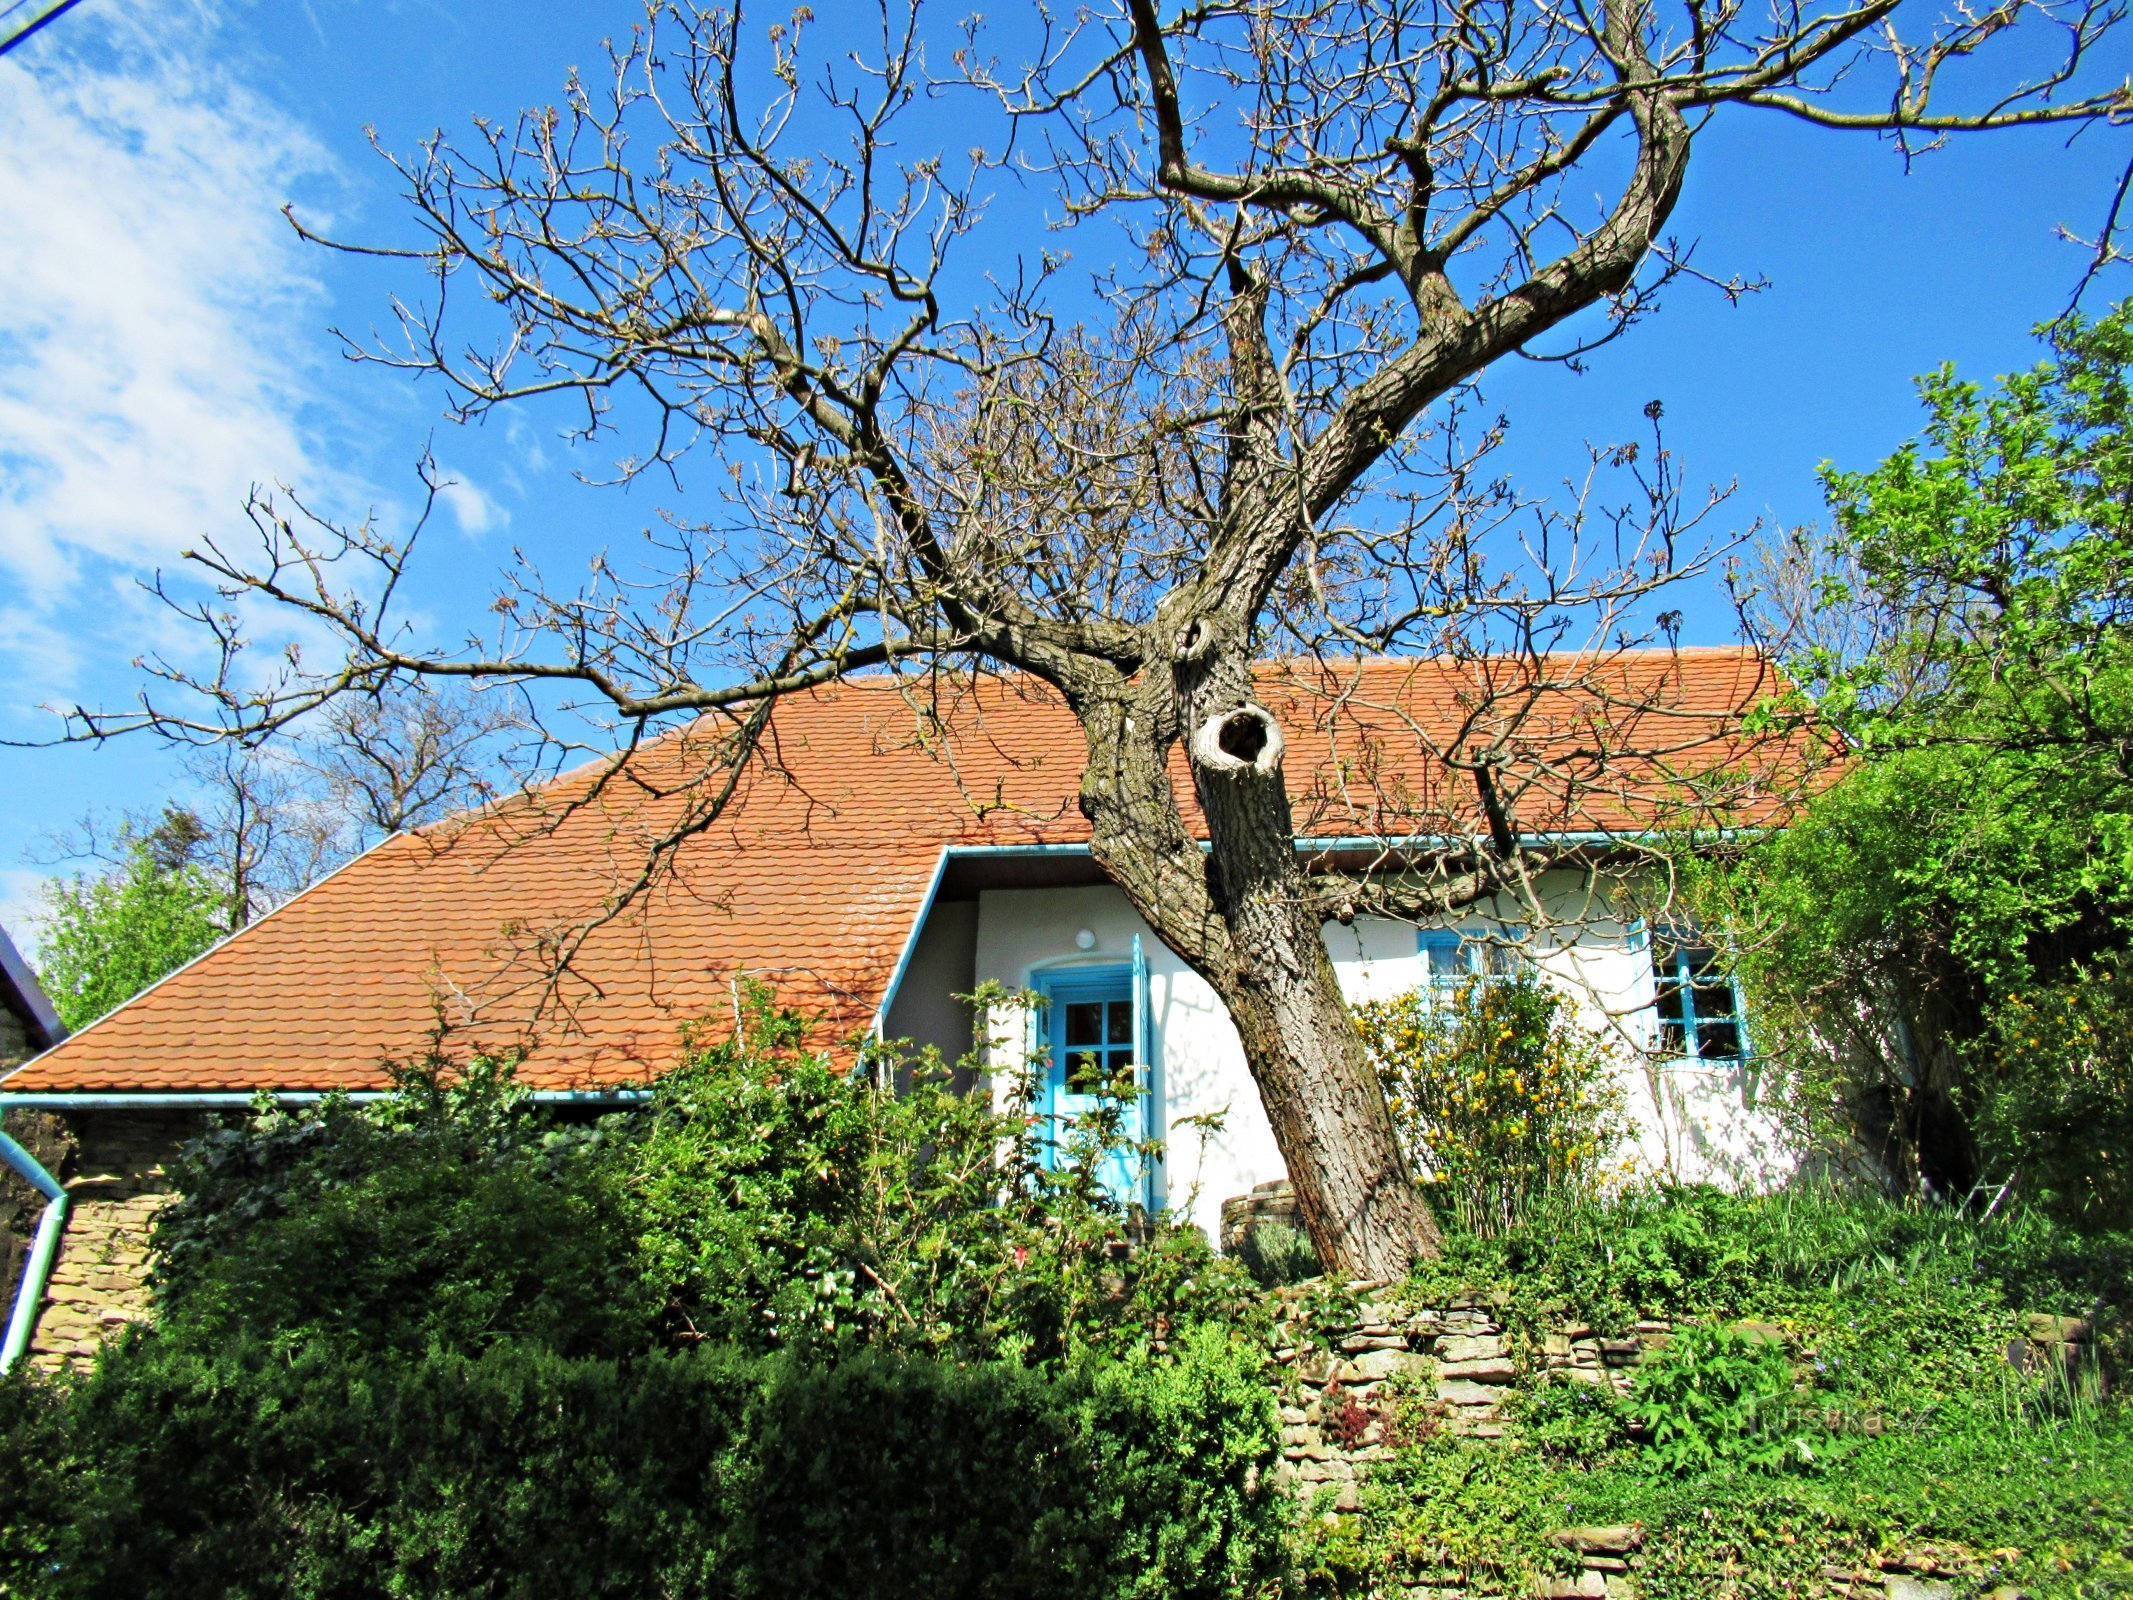 El pueblo de Javorník, casas pintorescas en la zona - Kopanky en el pueblo de Javorník en Slovácko